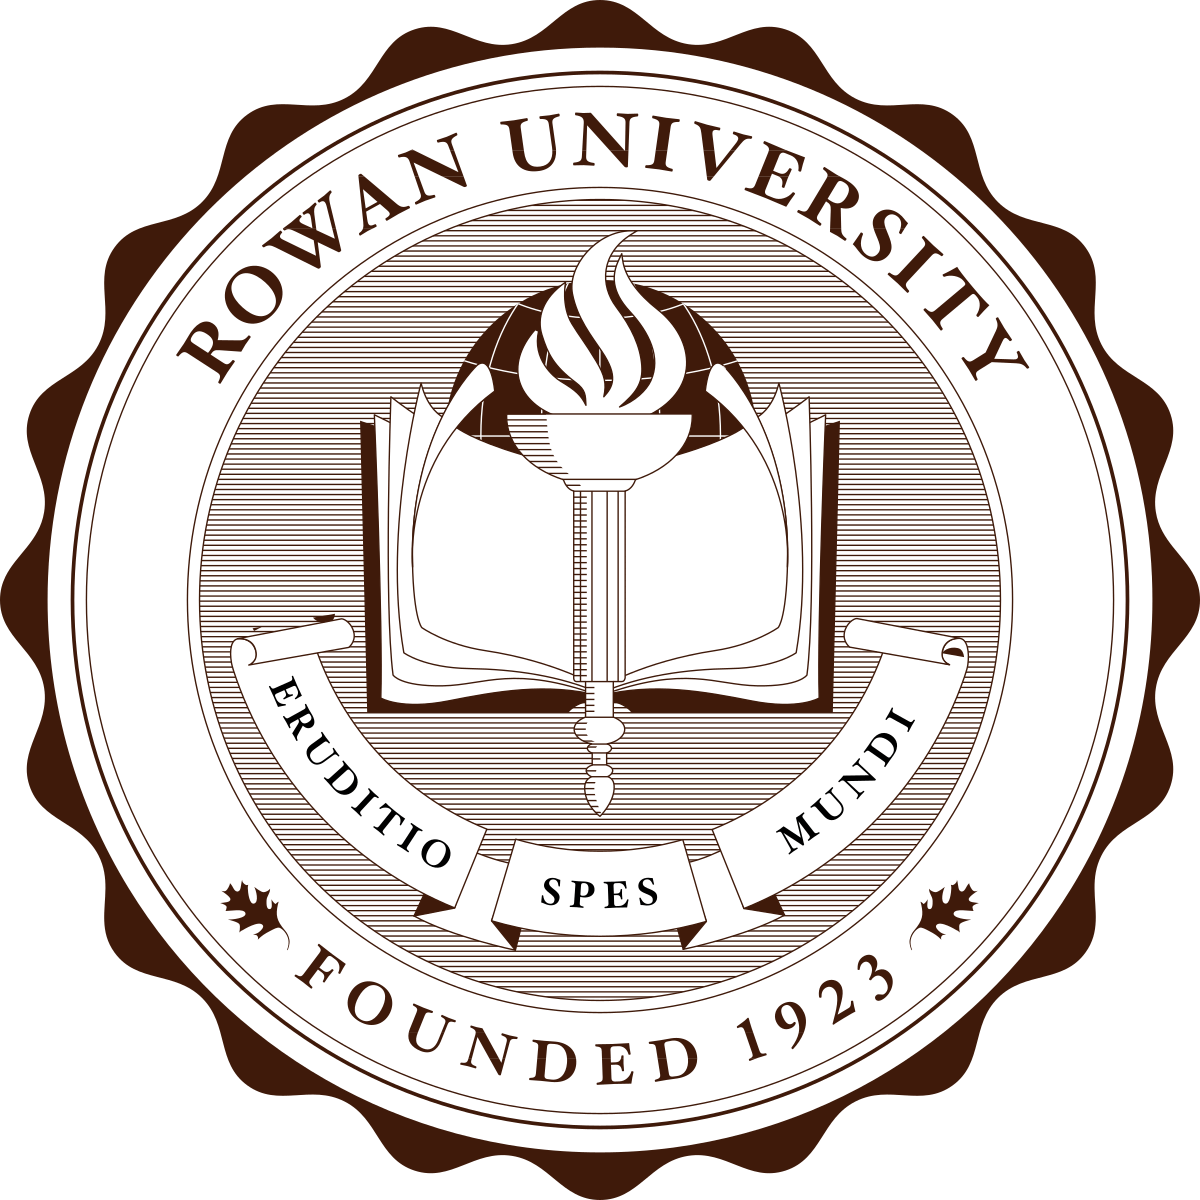 Rowan U Logo - Rowan University